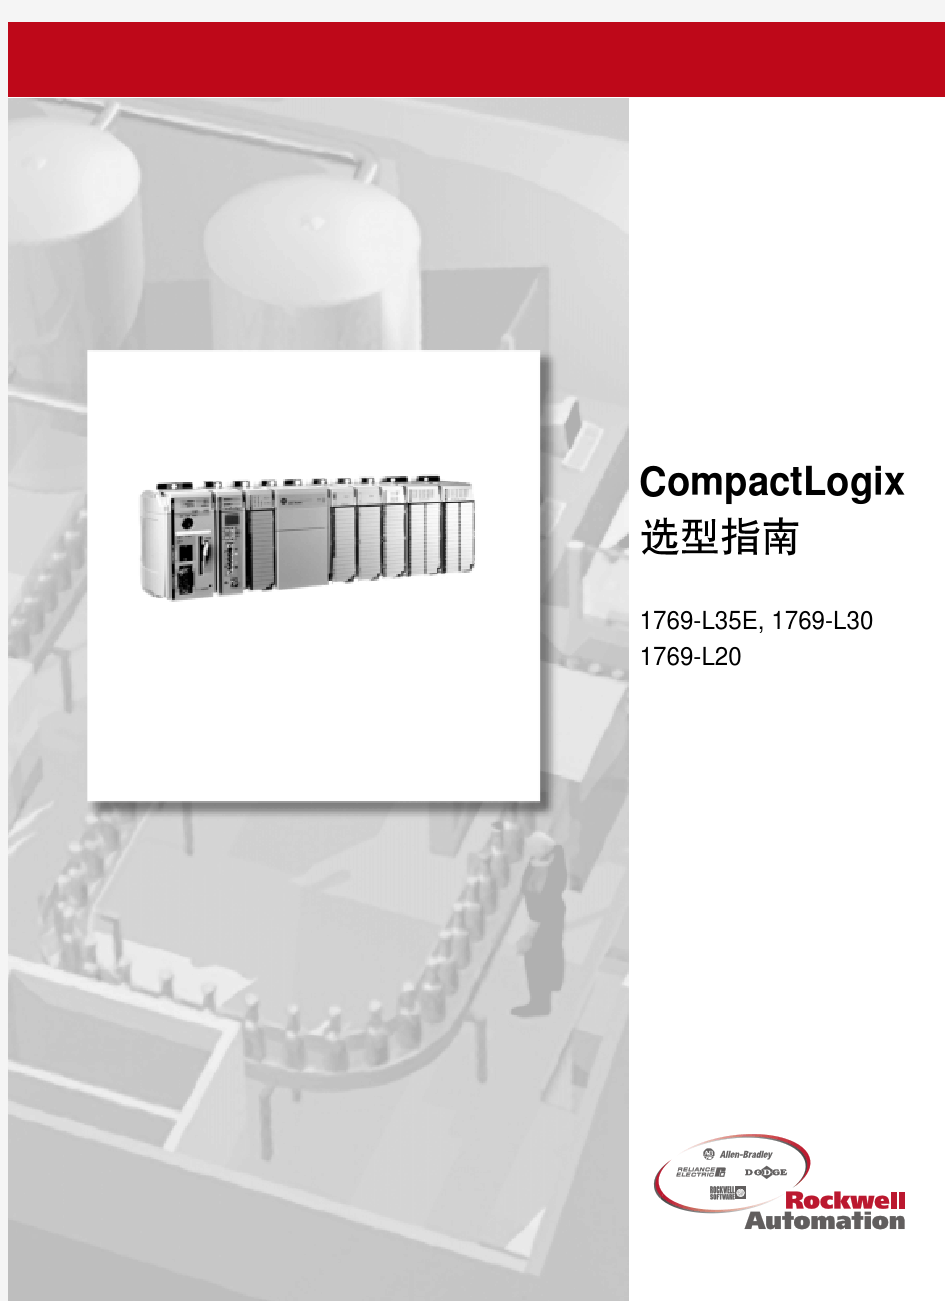 CompactLogix 选型指南